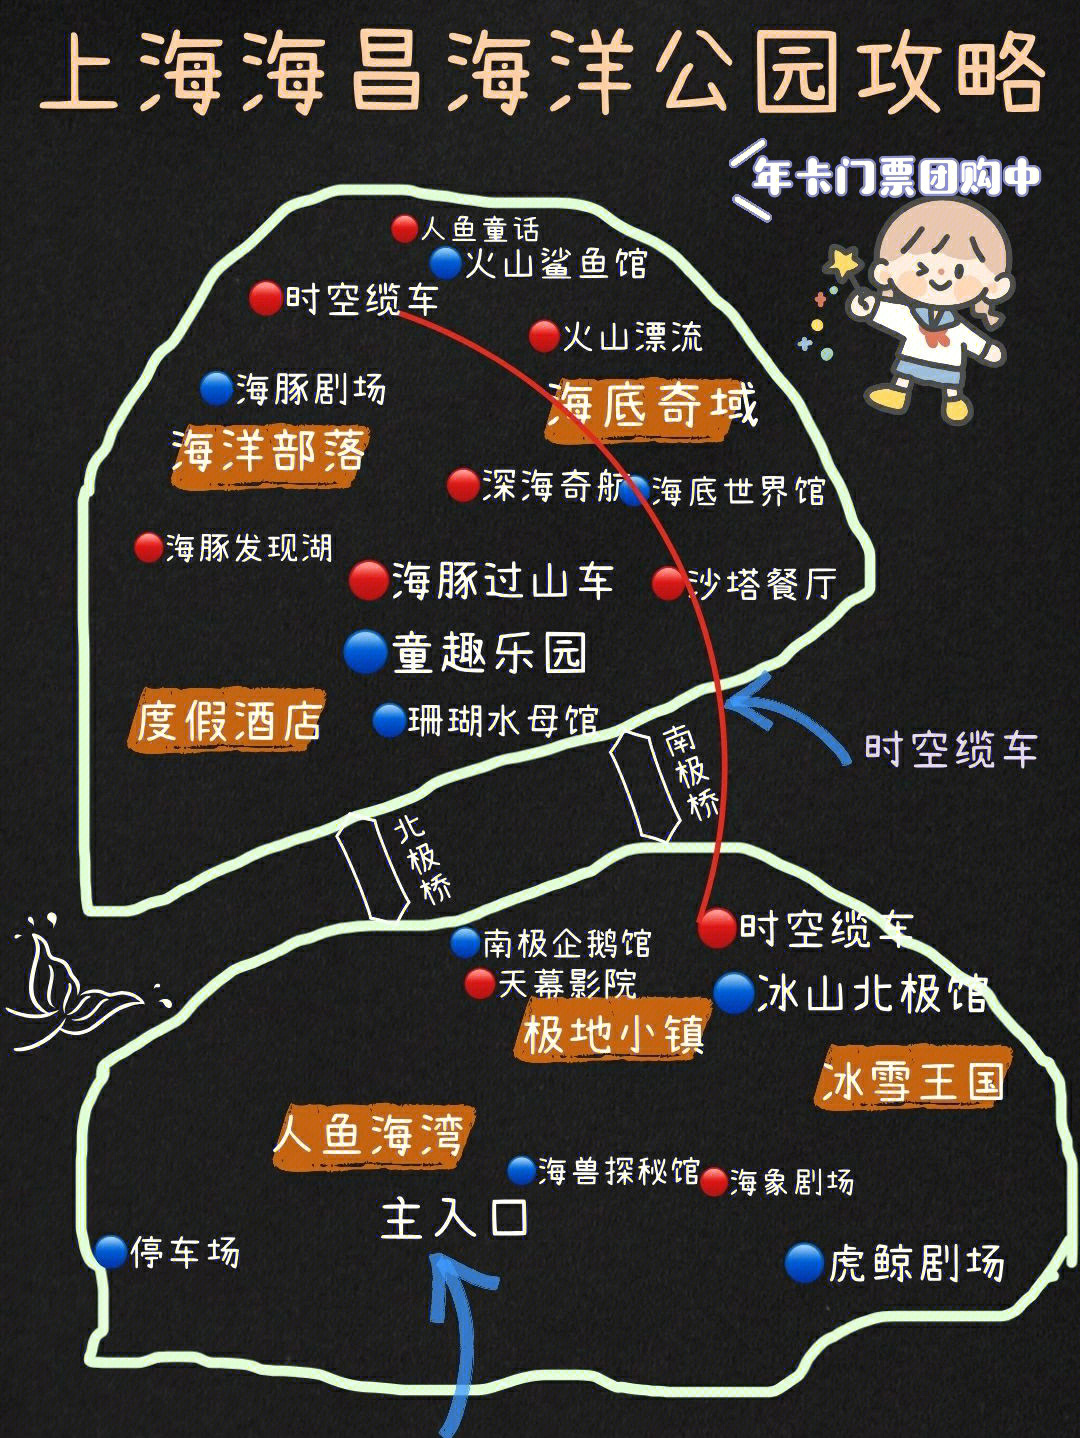 上海海昌海洋公园旅游攻略园区地图表演时间